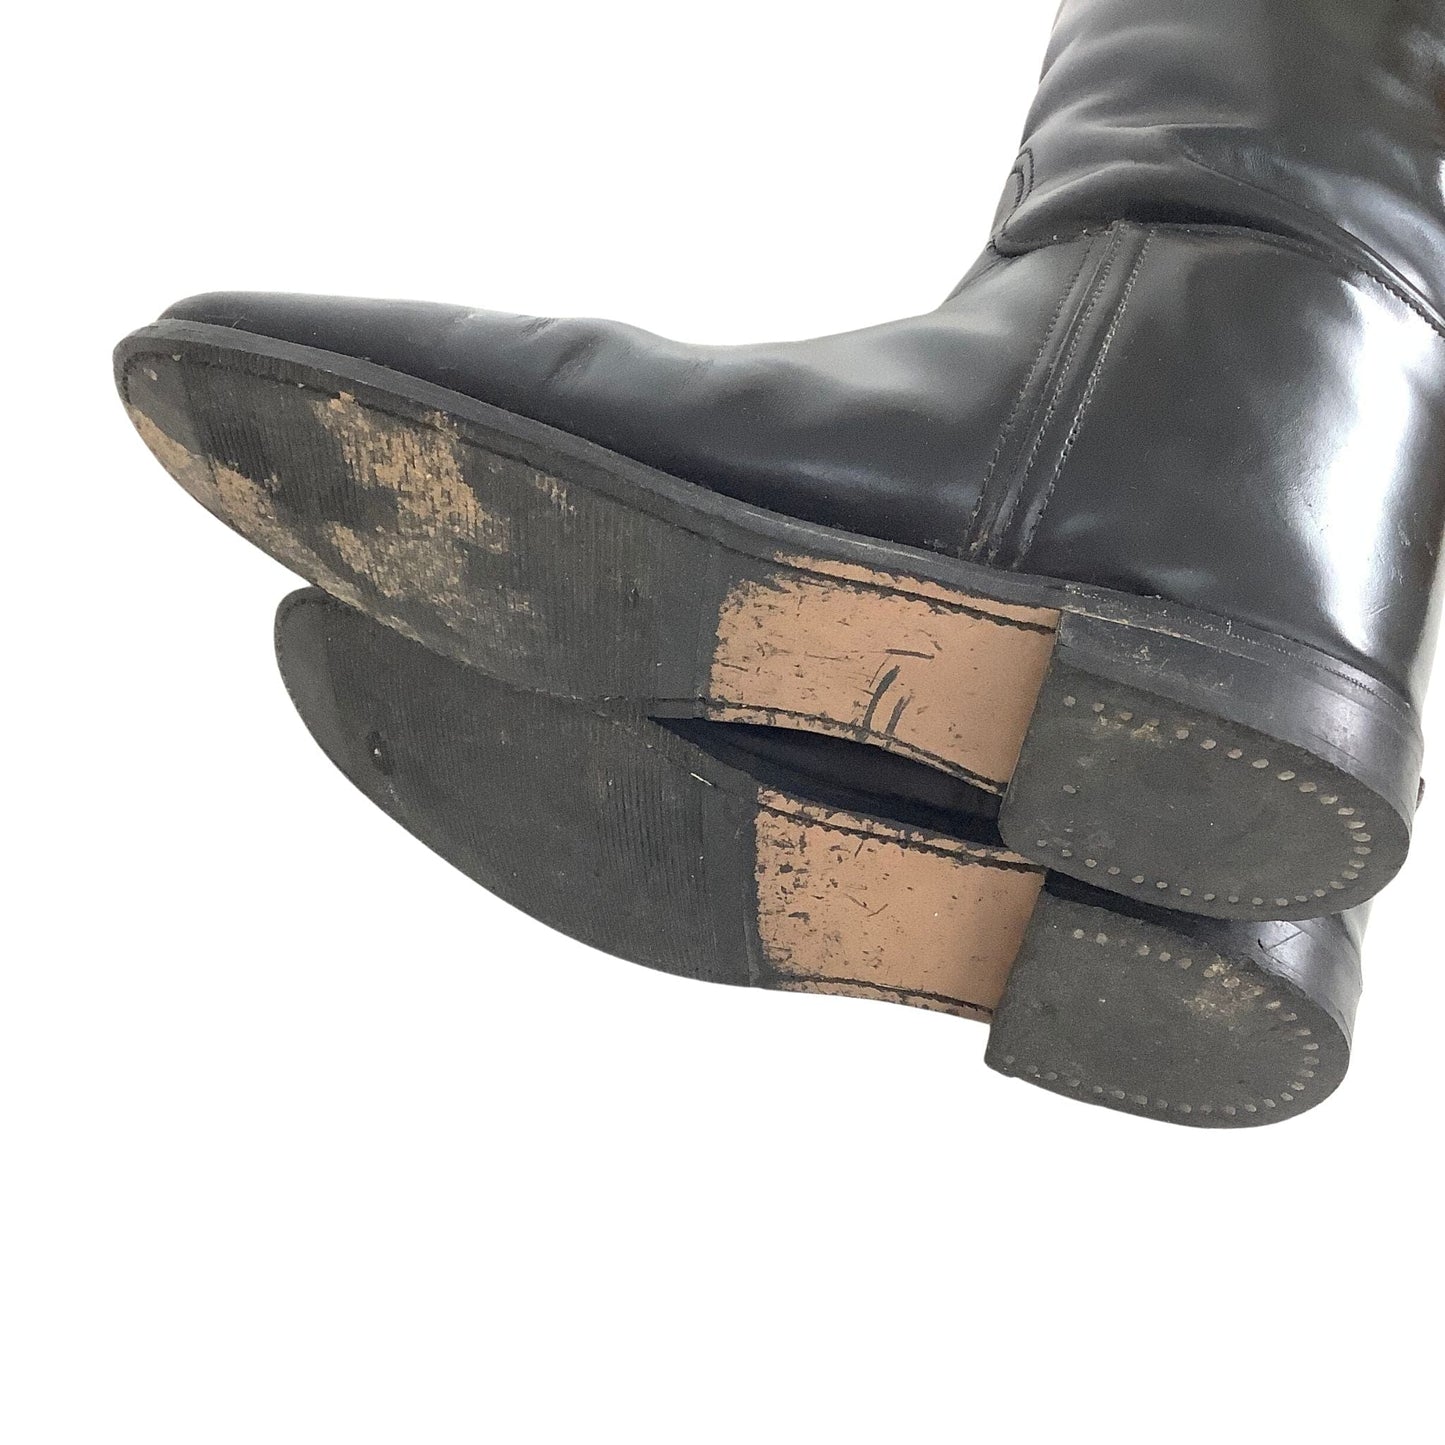 Used Dressage Boots 8 / Black / Vintage 1990s